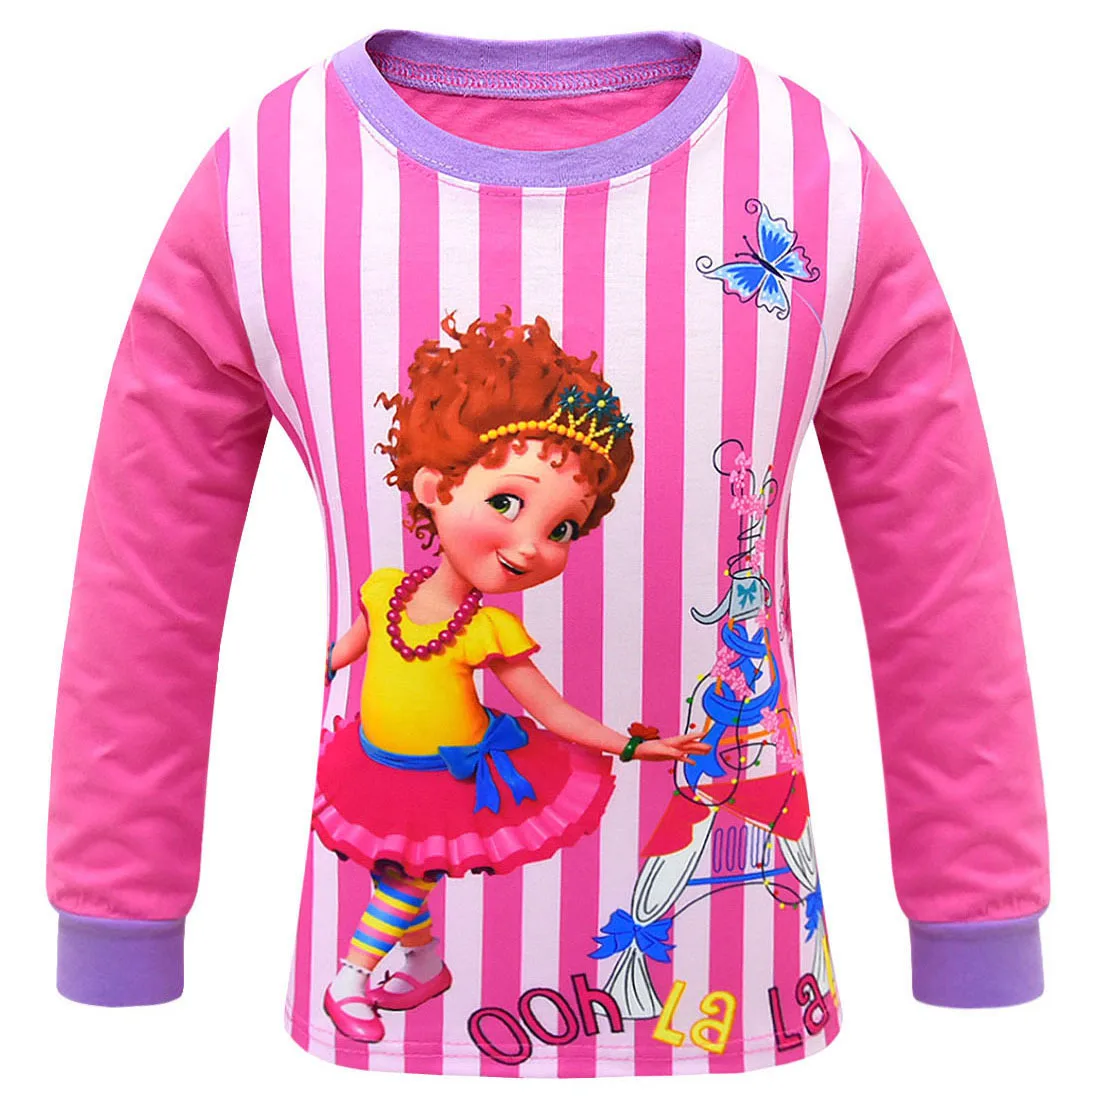 Детские пижамы для девочек на весну-осень, комплекты пижам для девочек, милая одежда для сна с длинными рукавами, Нэнси, детская одежда для сна, домашняя одежда